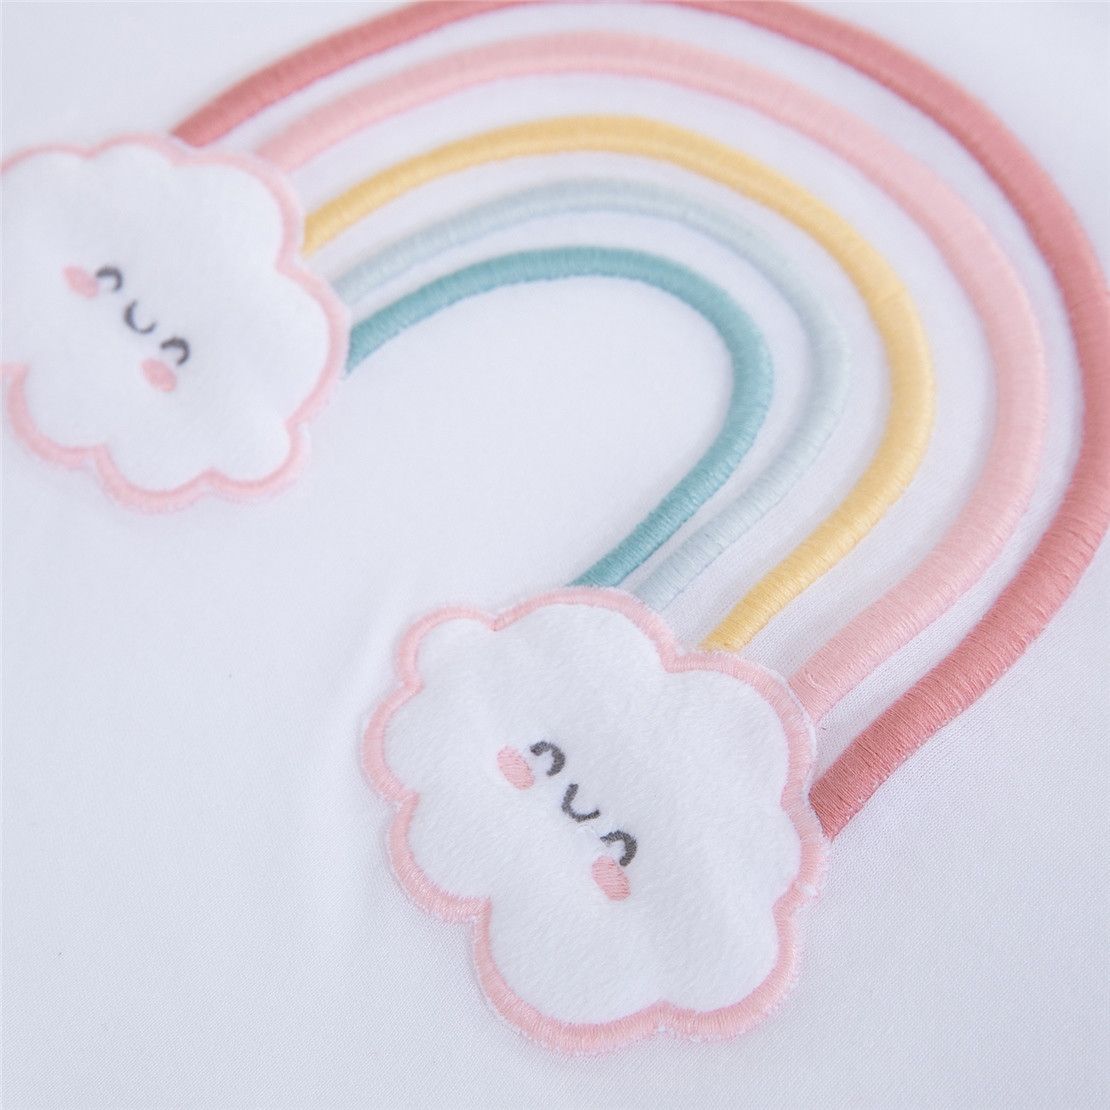 Набір для новонароджених універсальний Rainbow, 50-56 см, 6 одиниць, білий